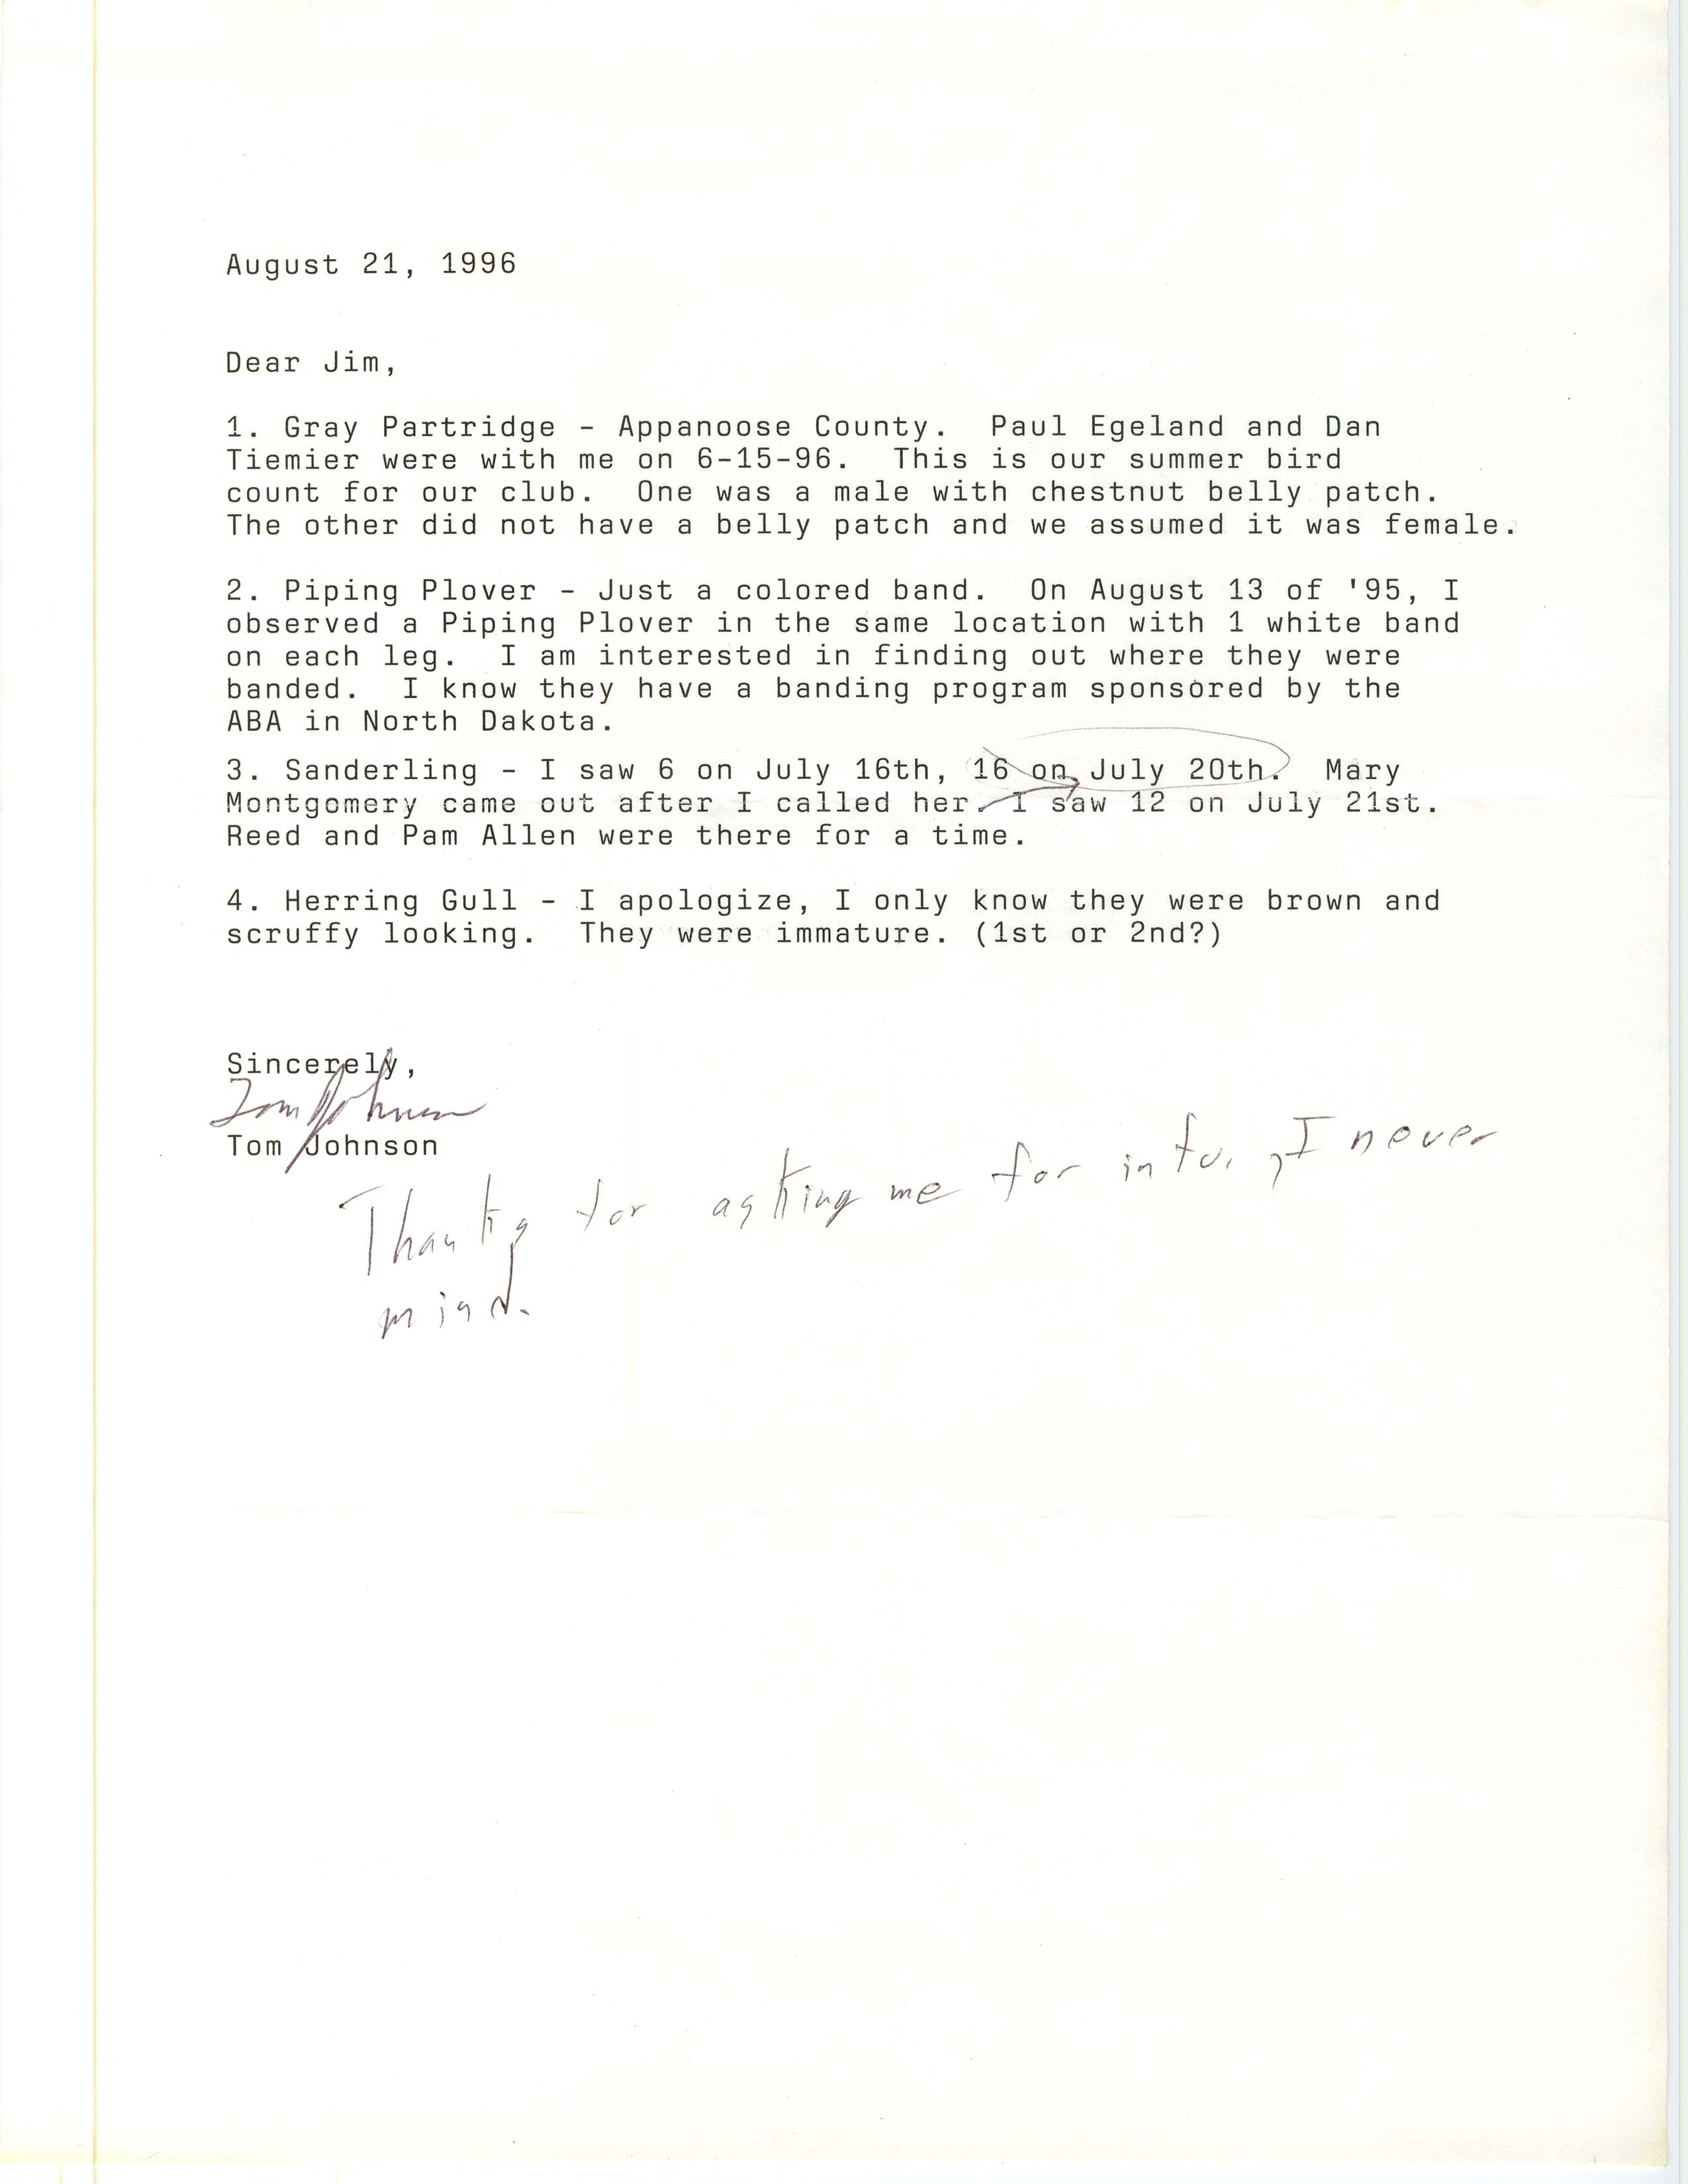 Tom Johnson letter to James J. Dinsmore regarding bird sightings, August 21, 1996